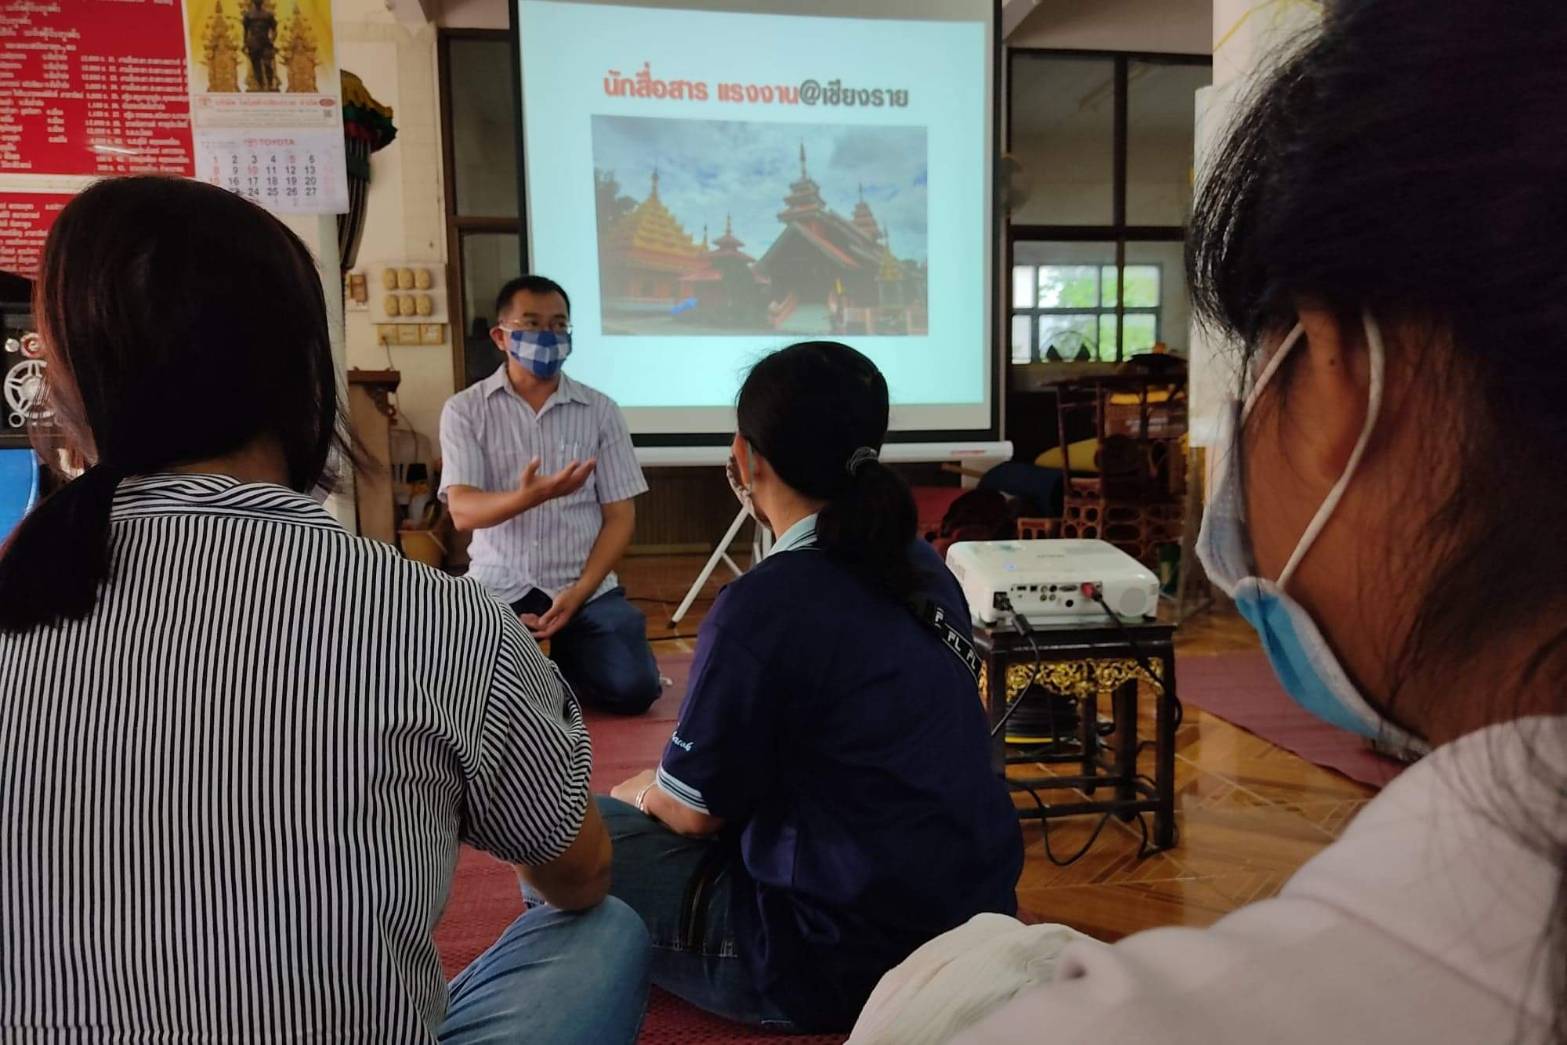 Ab - SIRC กับ Thai PBS อบรม ‘นักข่าวพลเมือง’ ให้แก่กลุ่มแรงงานข้ามชาติ จ.เชียงราย